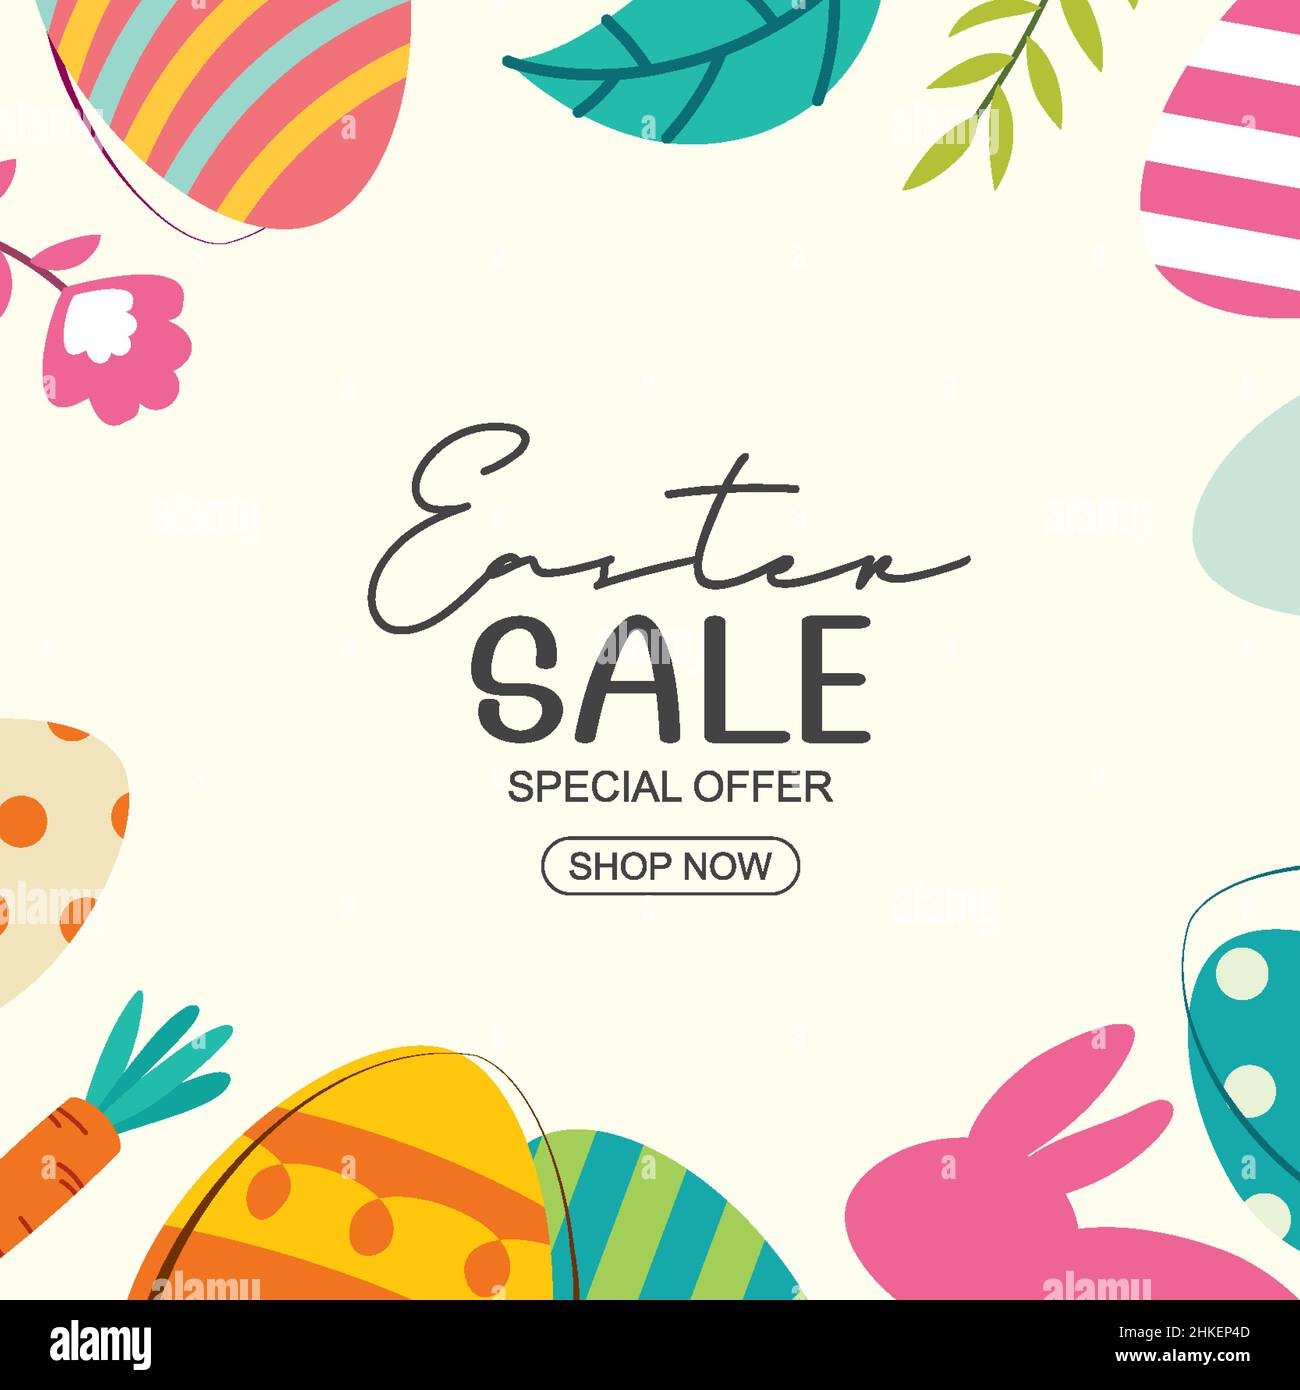 Ostern verkauf Banner Design vorlage mit bunten Eiern und Blumen. Verwenden Sie für Werbung, Flyer, Poster, Broschüre, gutschein rabatt. Stock Vektor